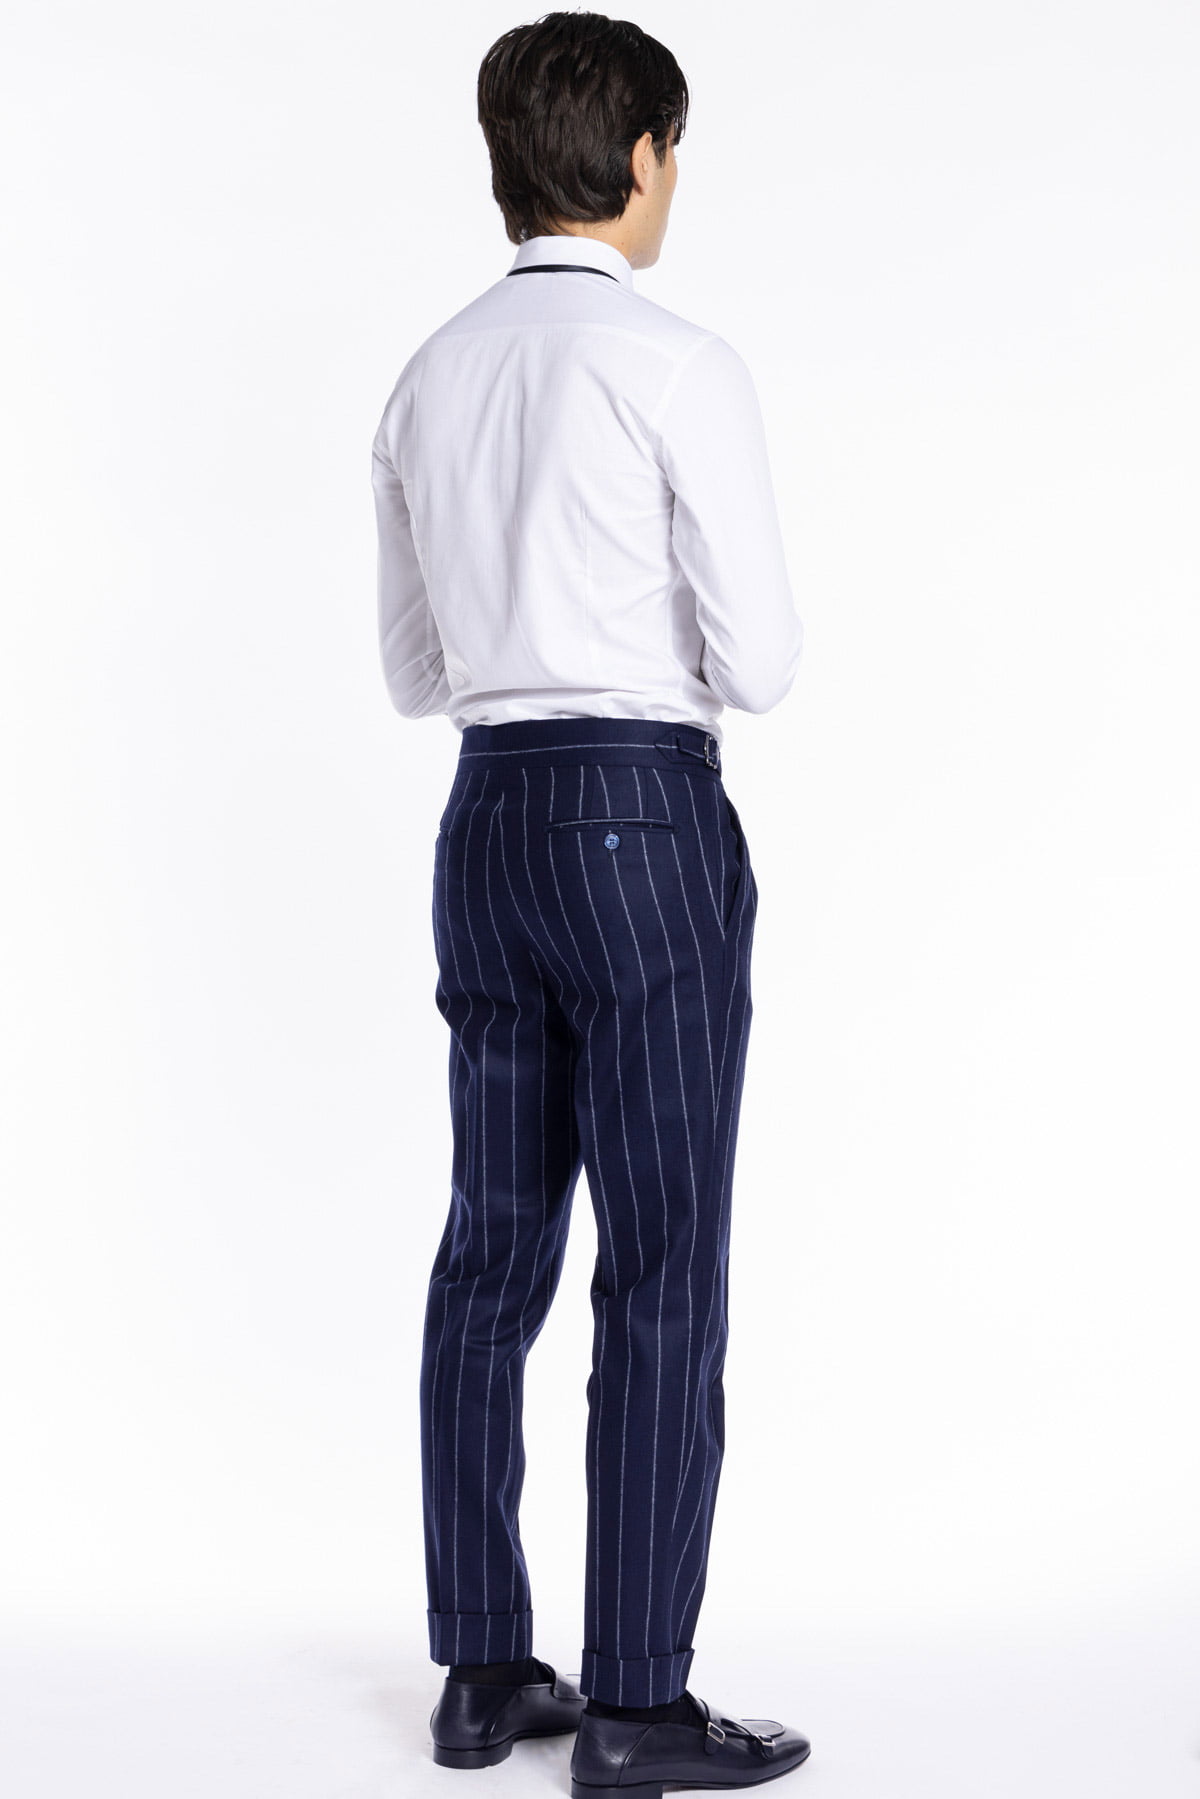 Pantalone uomo blu gessato vita alta tasca america in lana flanella Vitale Barberis Canonico con doppia pinces e fibbie laterali regolabili